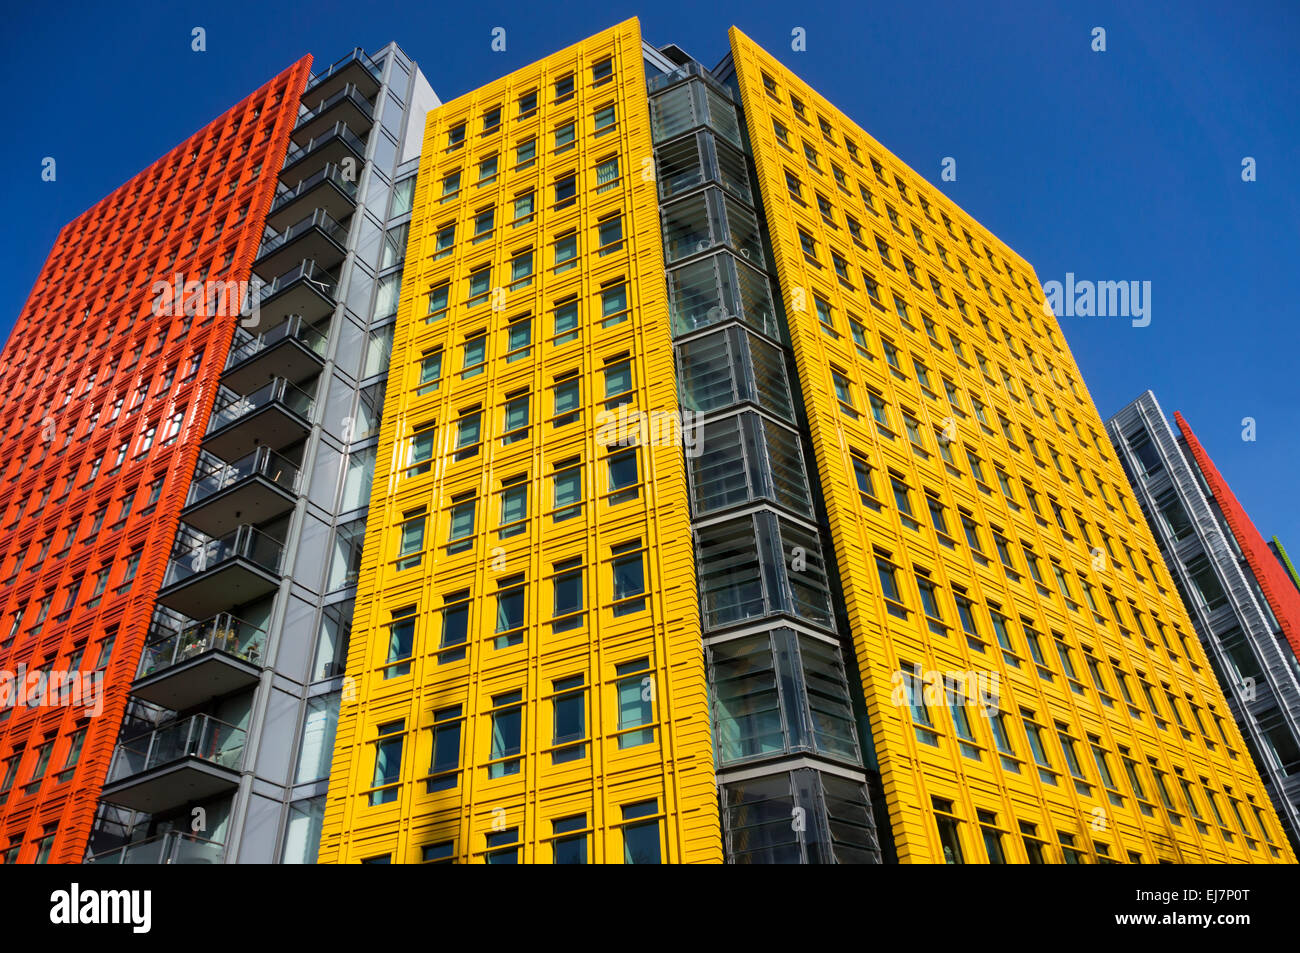 Colorido revestimiento en el centro de St Giles desarrollo de uso mixto en el centro de Londres, diseñado por Renzo Piano. Foto de stock